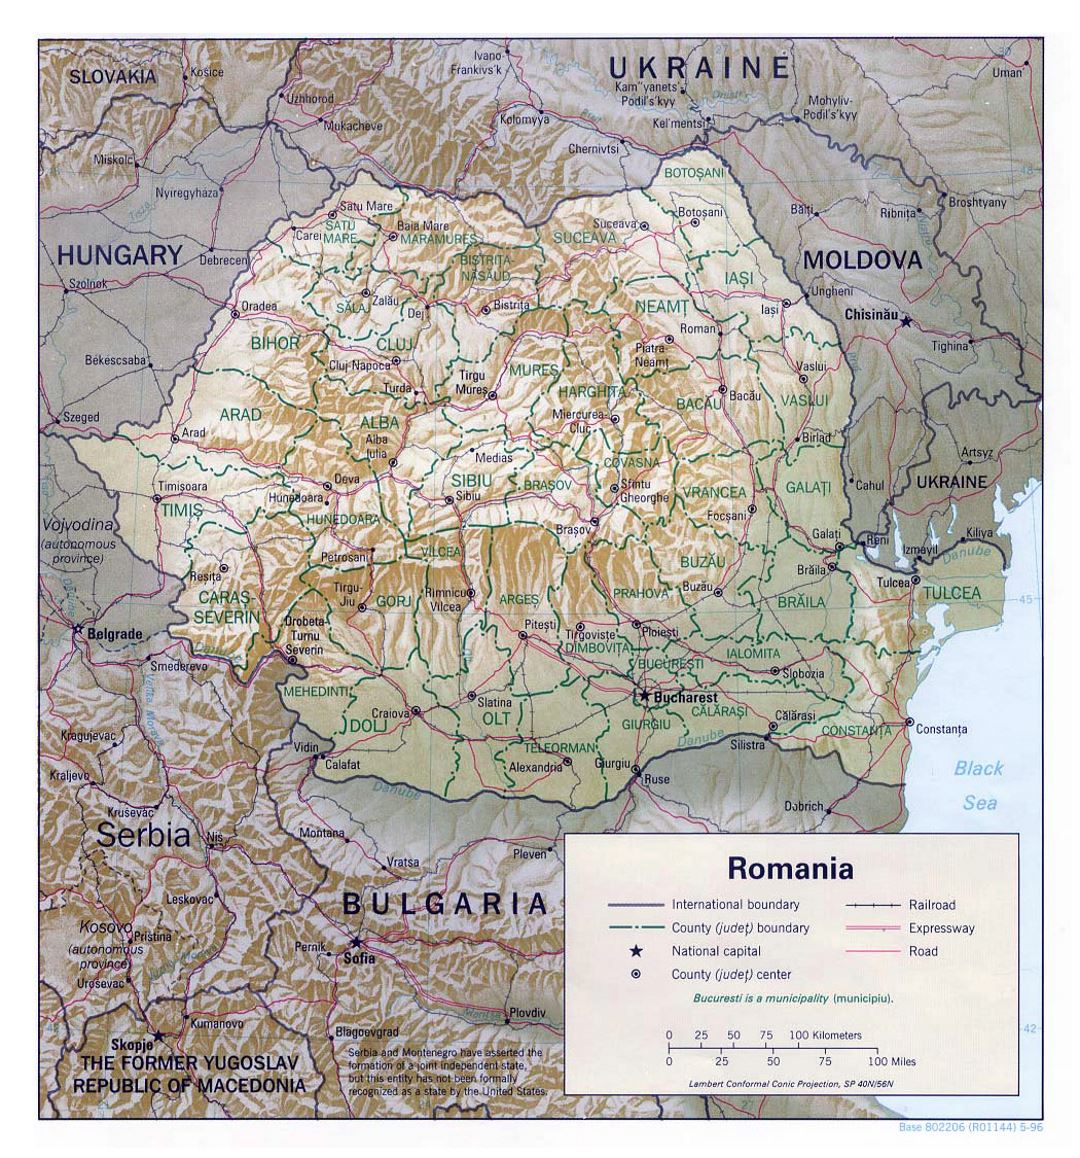 Detallado mapa político y administrativo de Rumania con alivio, carreteras, vías férreas y principales ciudades - 1996